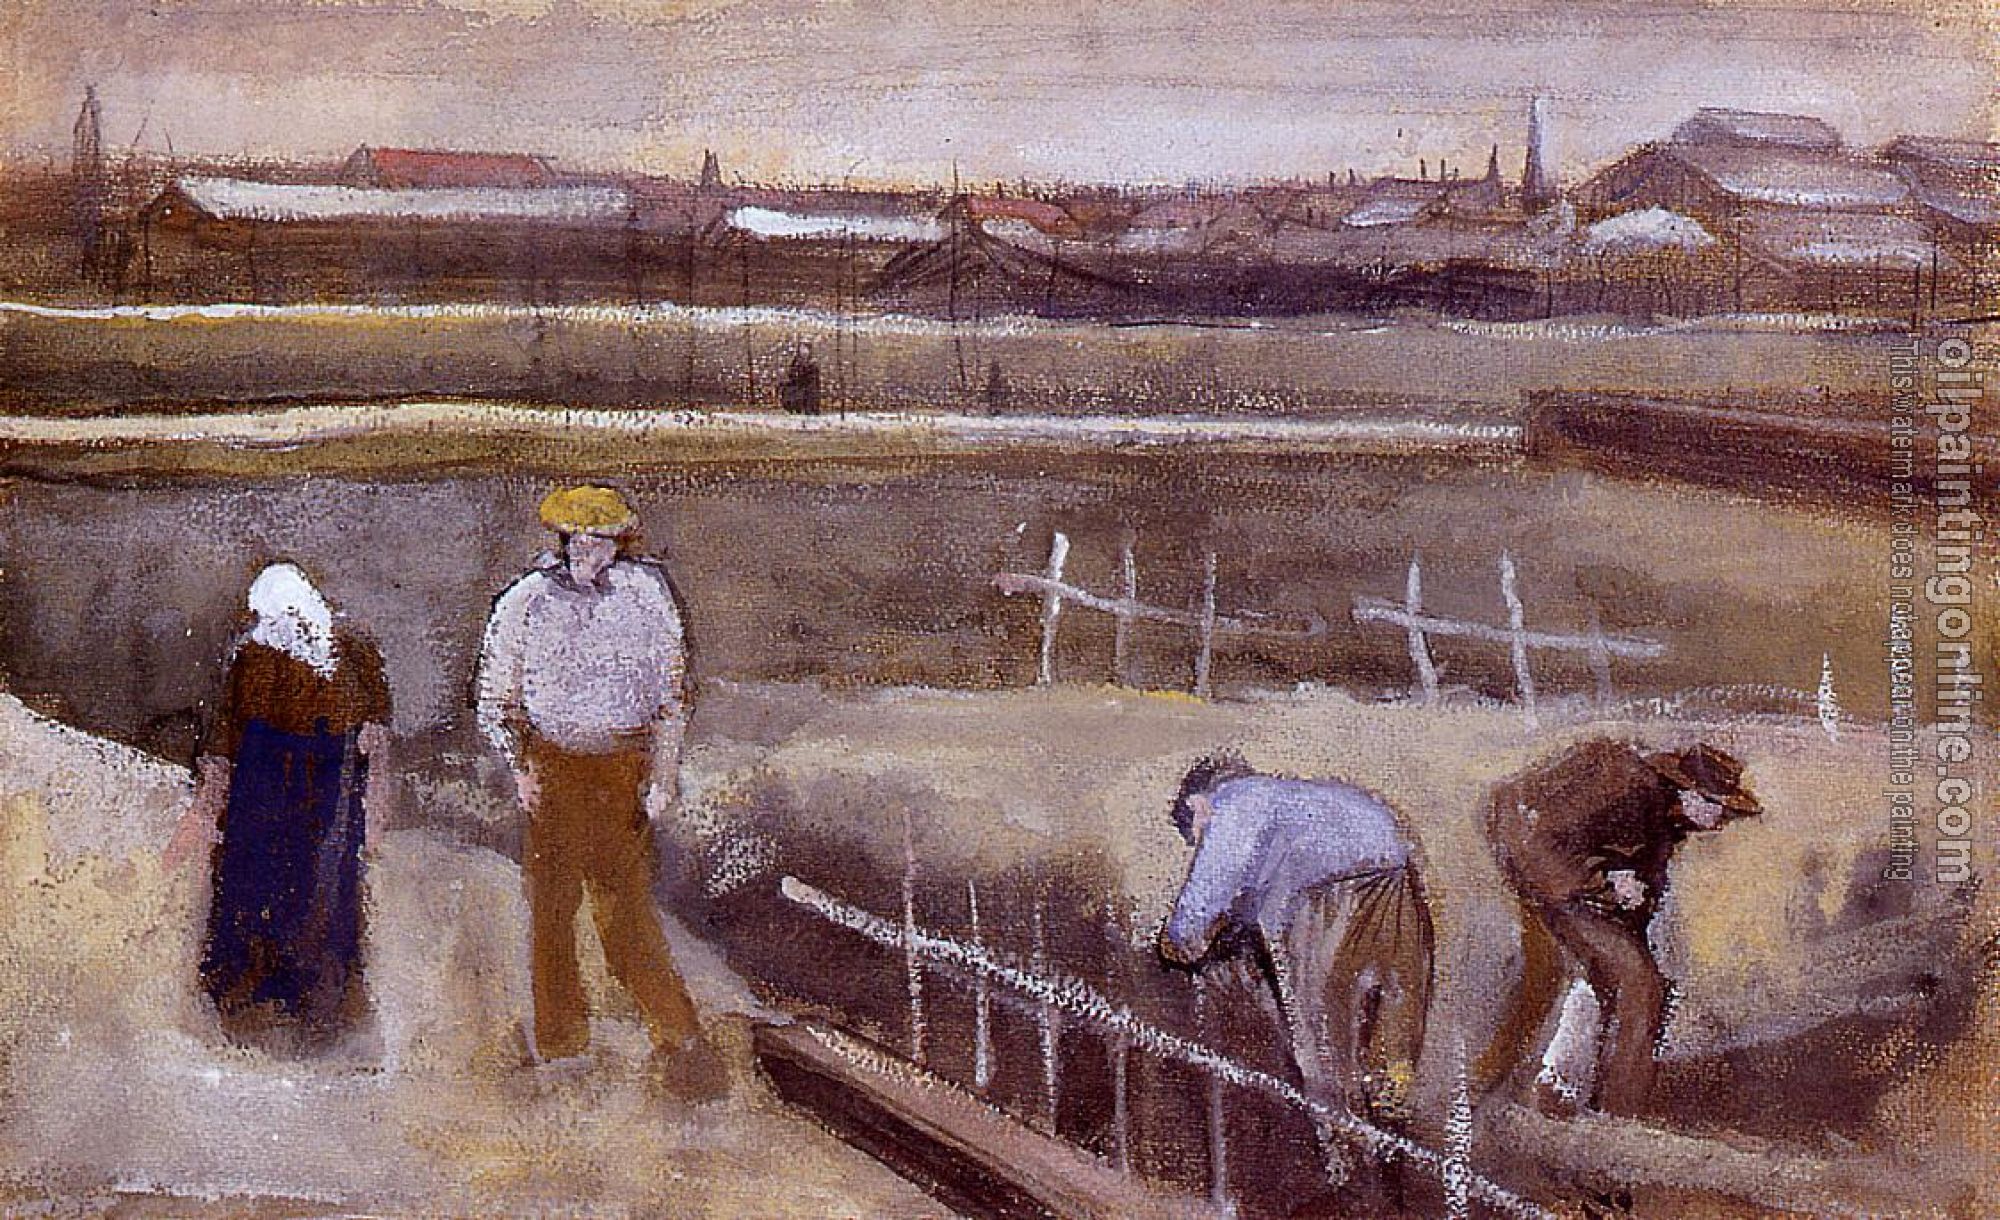 Gogh, Vincent van - Meadows near Rijswijk